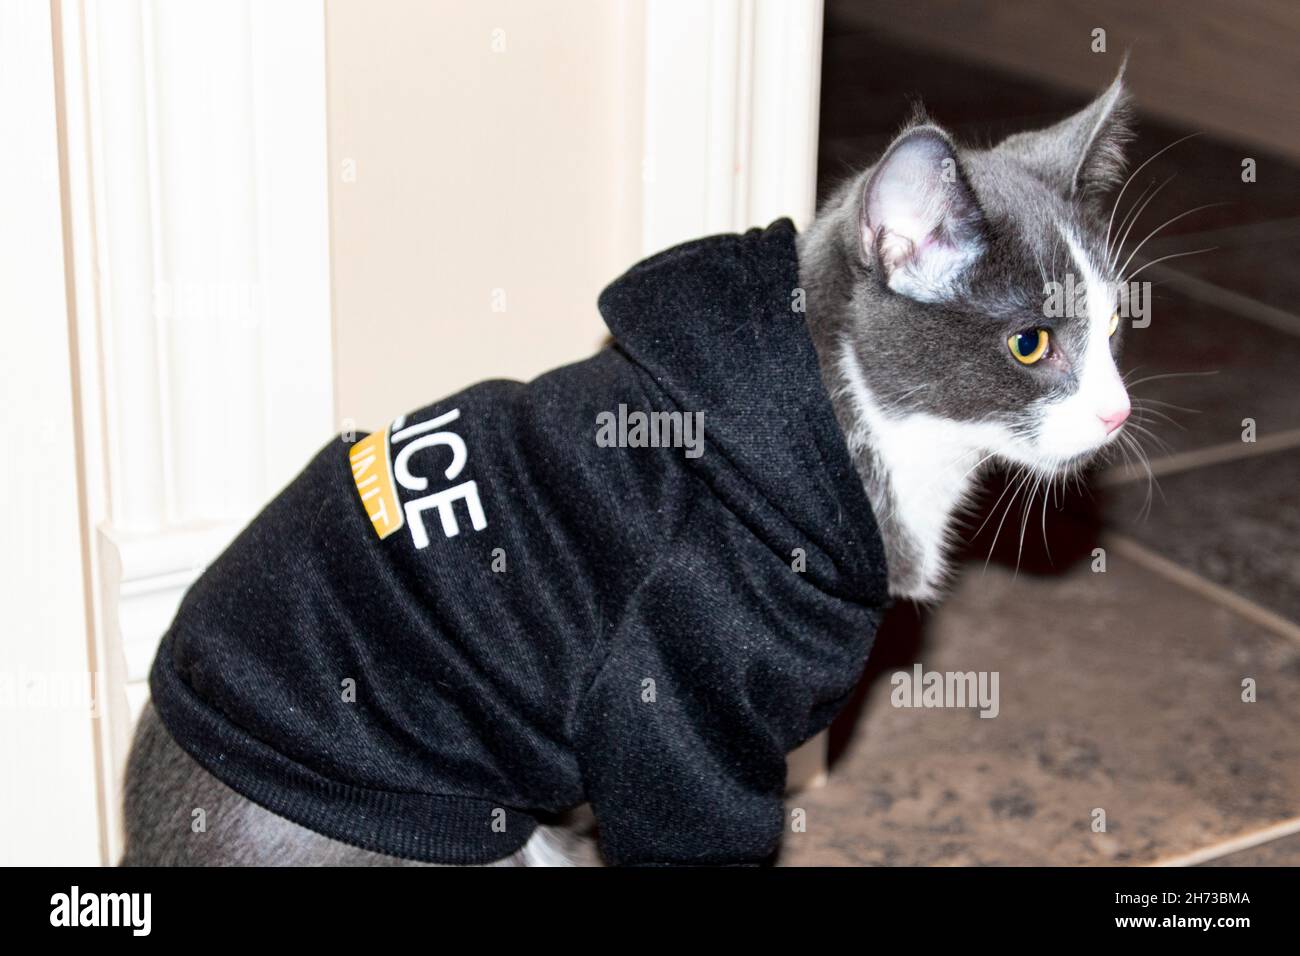 Graues und weißes Kätzchen, das seitlich im Haus sitzt und einen schwarzen Polizeipullover trägt Stockfoto